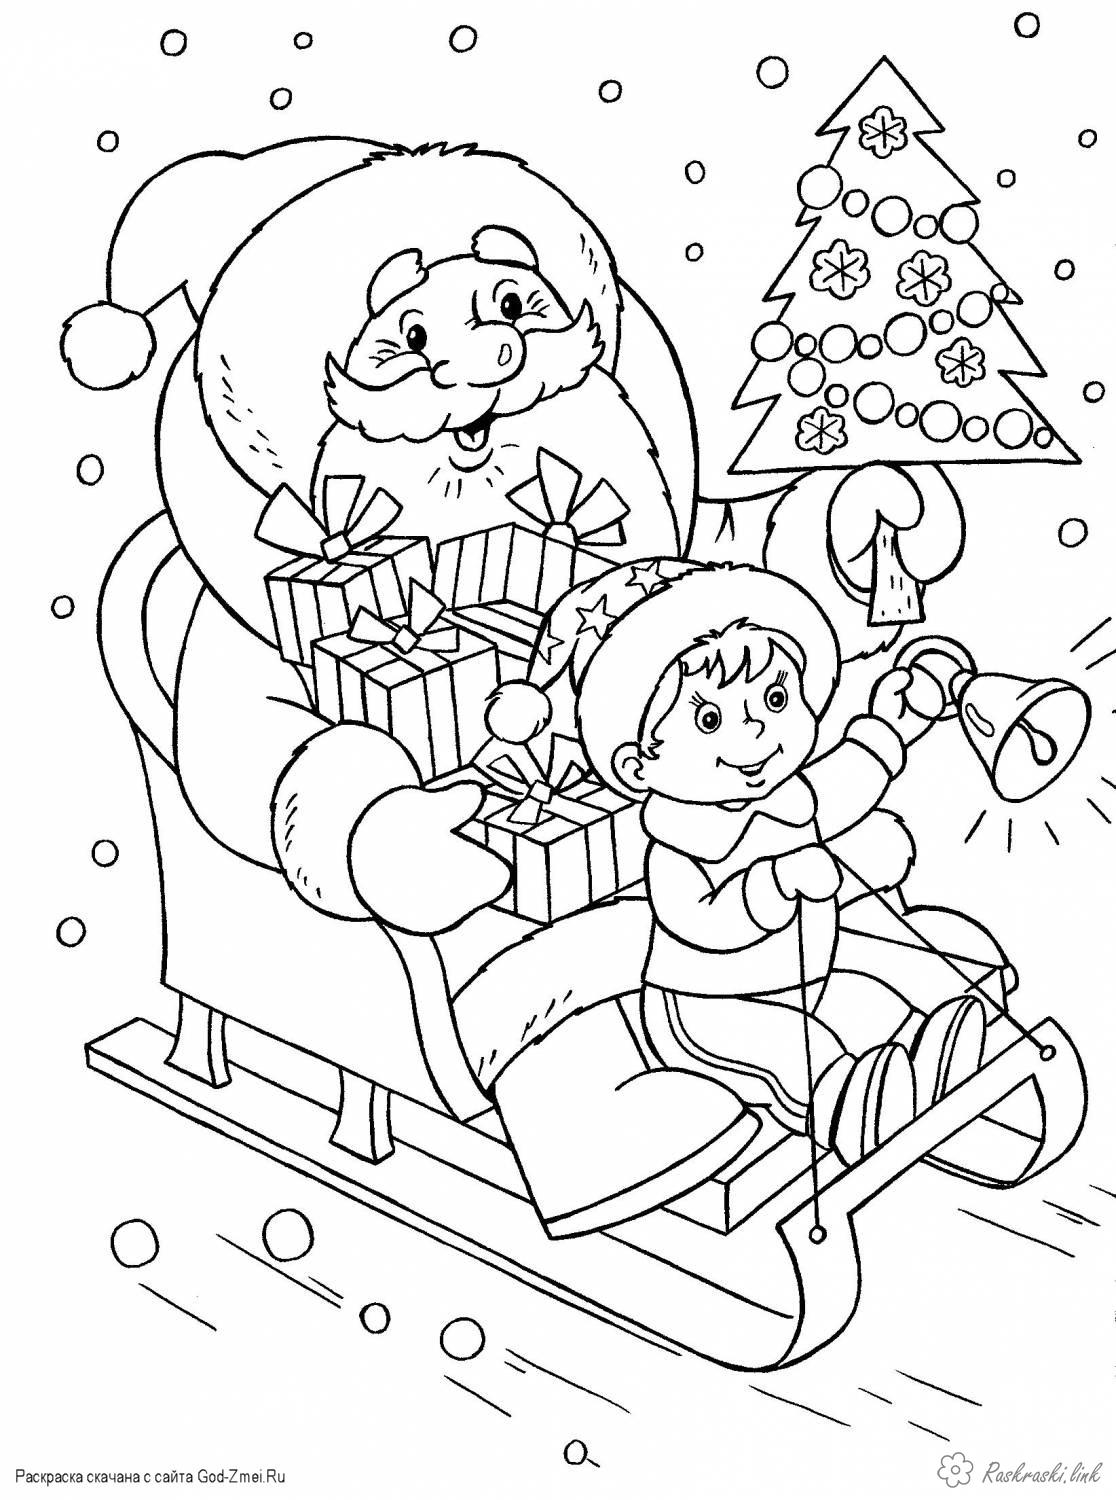 Розмальовки розмальовка Дитяча новорічна розфарбування, дід мороз на санях з подарунками